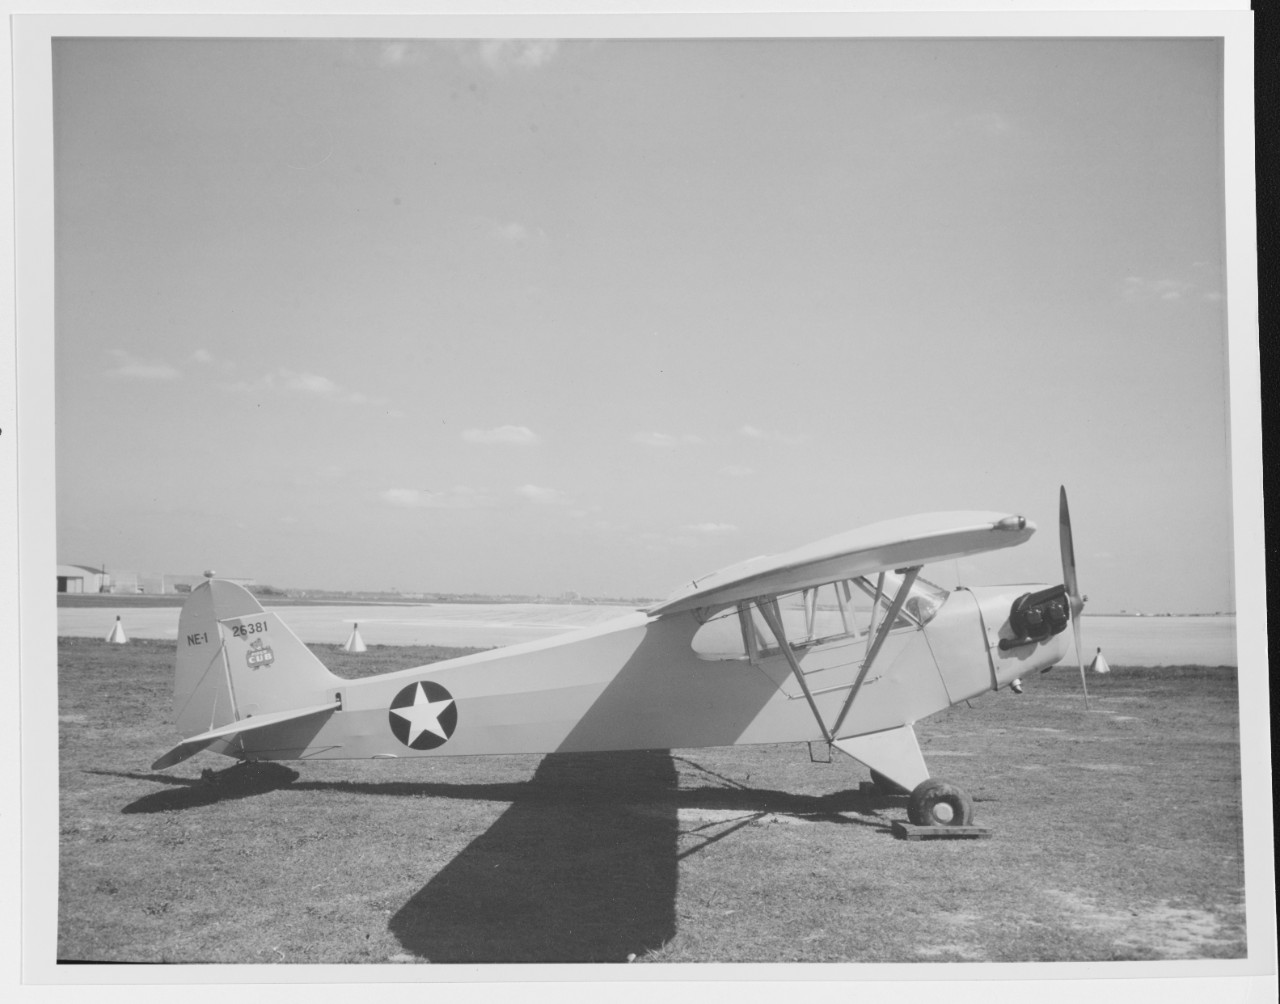 Piper NE-1 "Cub" trainer aircraft (Bu number 26381)